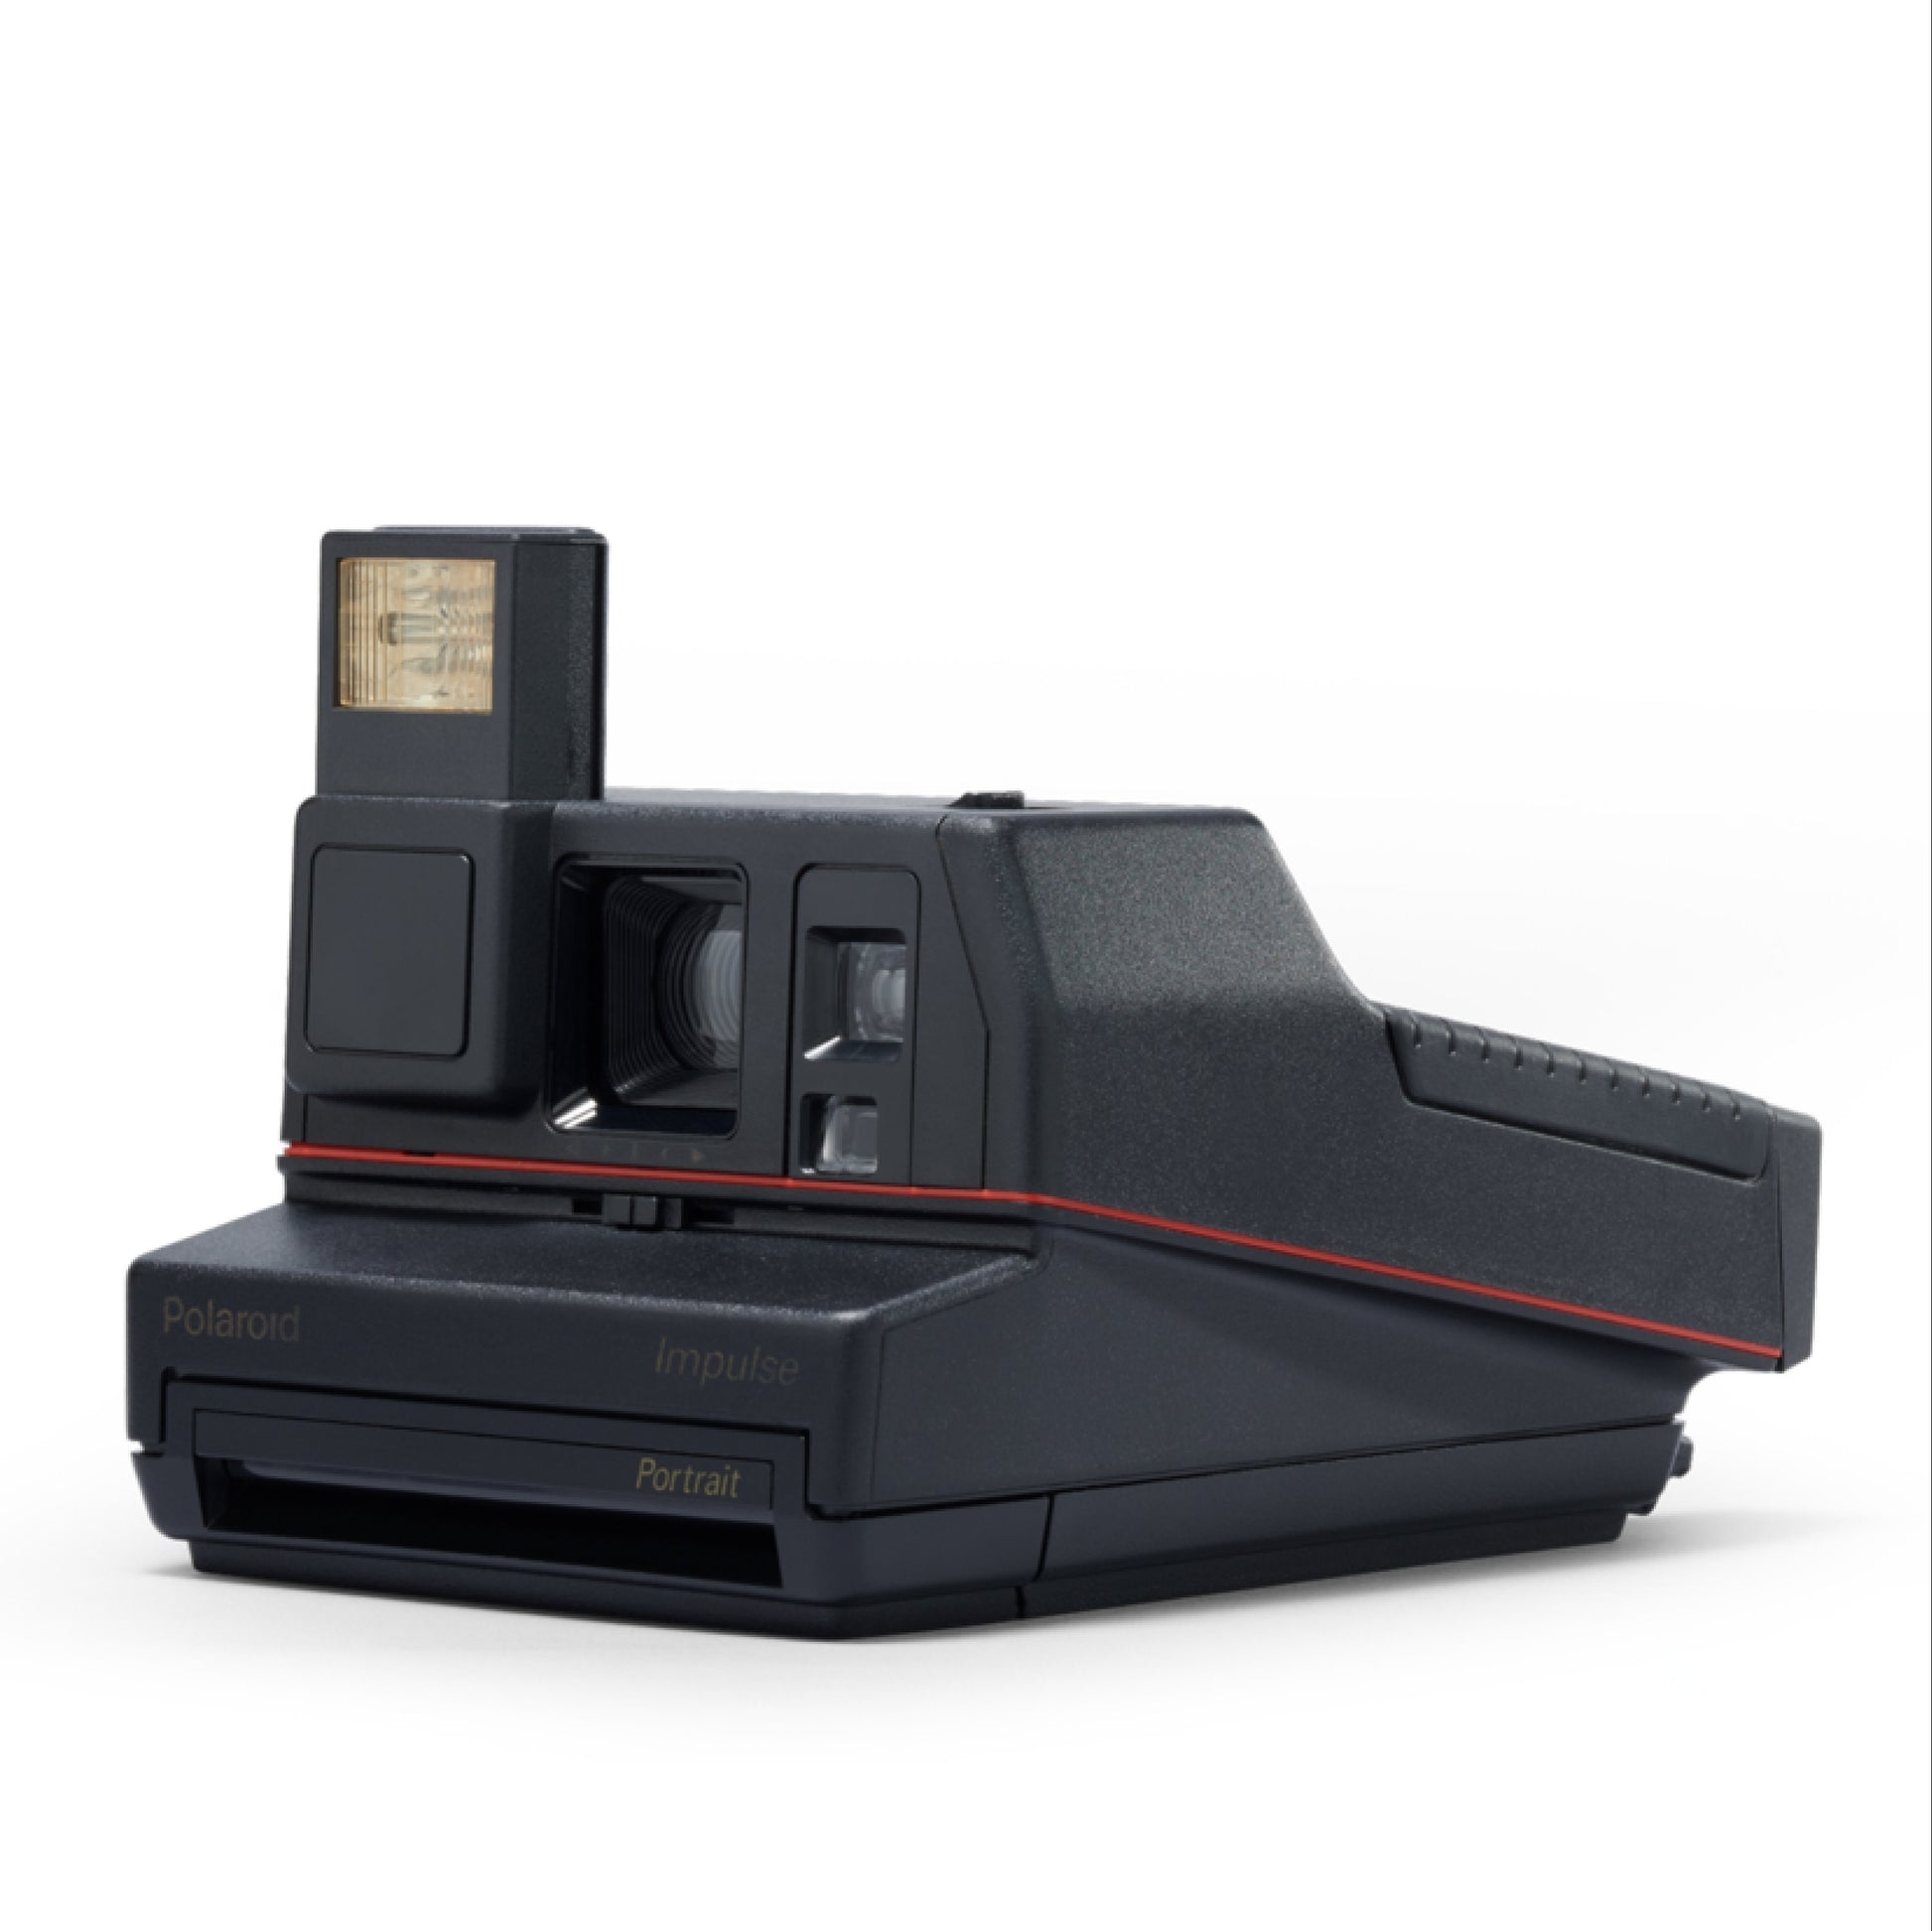 Polaroid Impulse Portait Instant Film Camera Black - Vintage Polaroid Instant Cameras